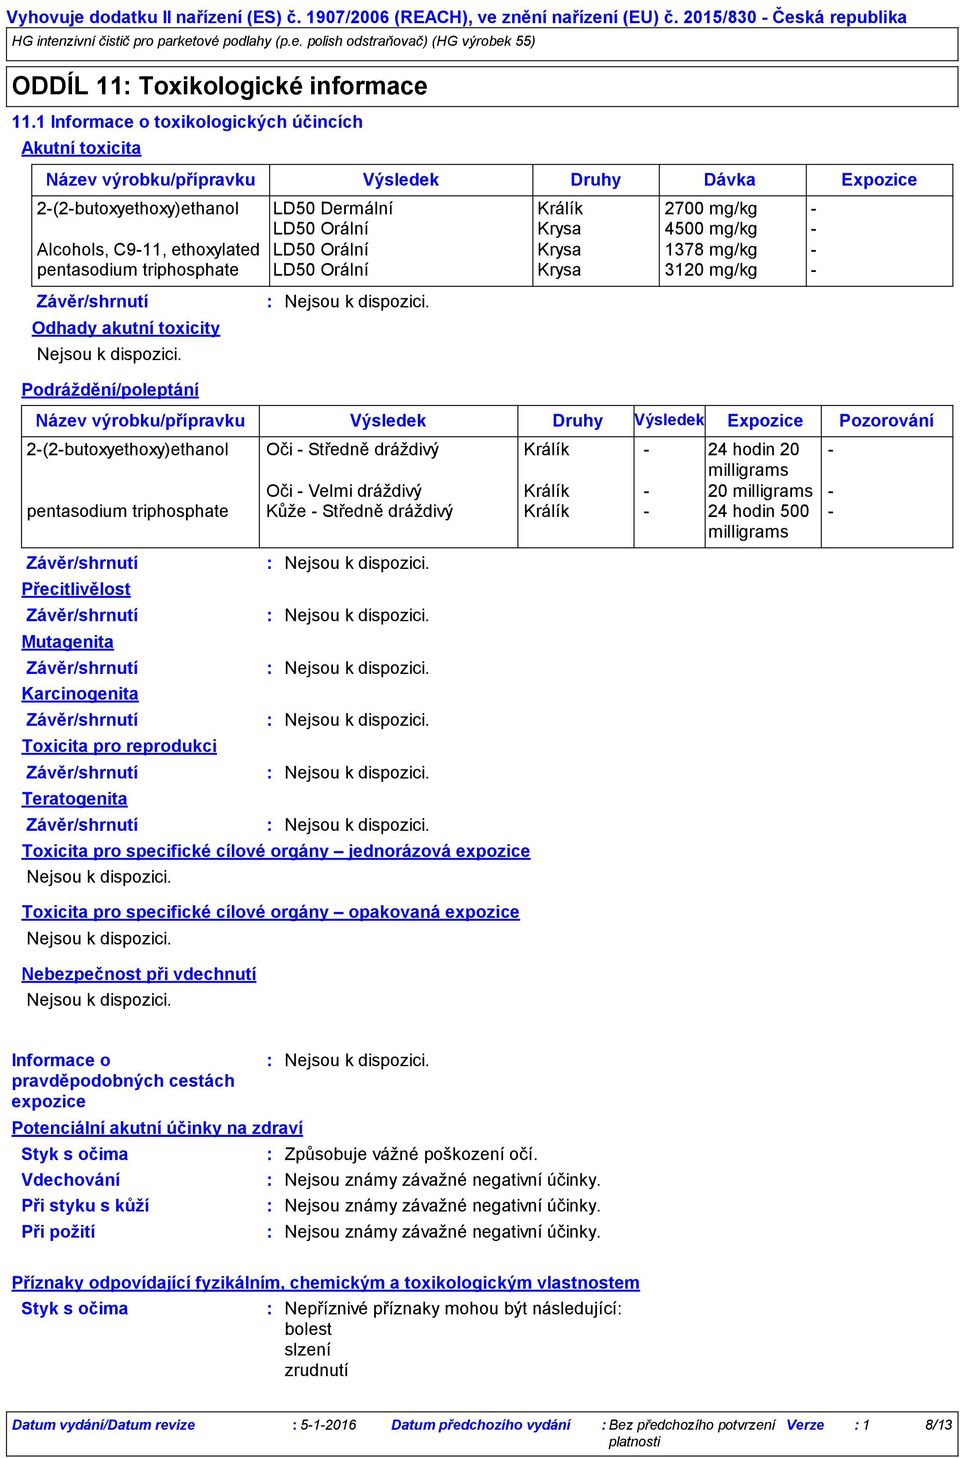 Alcohols, C911, ethoxylated LD50 Orální Krysa 1378 mg/kg pentasodium triphosphate LD50 Orální Krysa 3120 mg/kg Odhady akutní toxicity Podráždění/poleptání Karcinogenita Název výrobku/přípravku